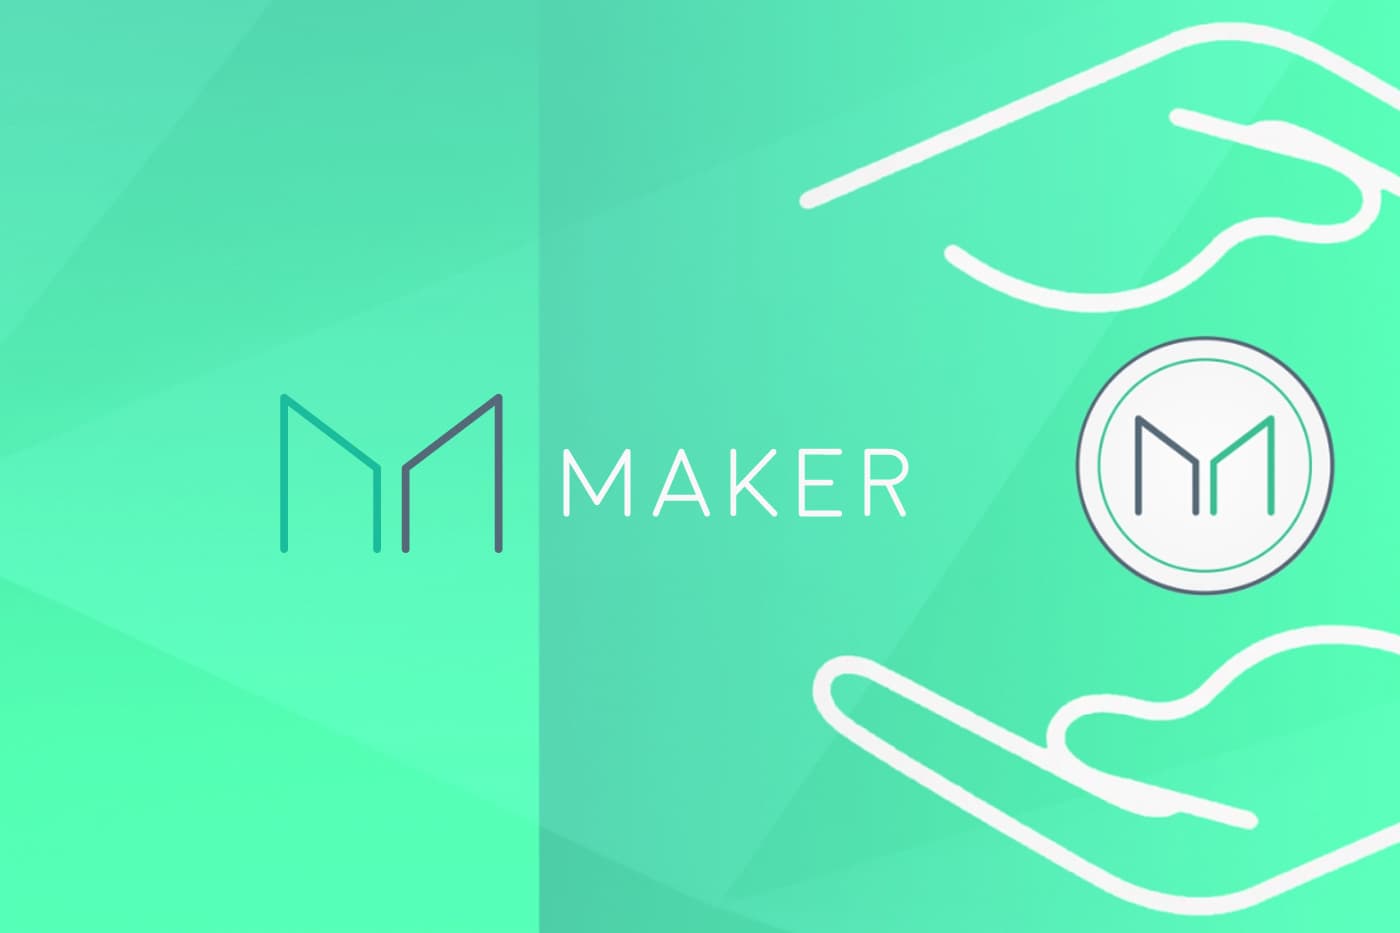 MakerFoundation transfere R$2 bilhões para comunidade